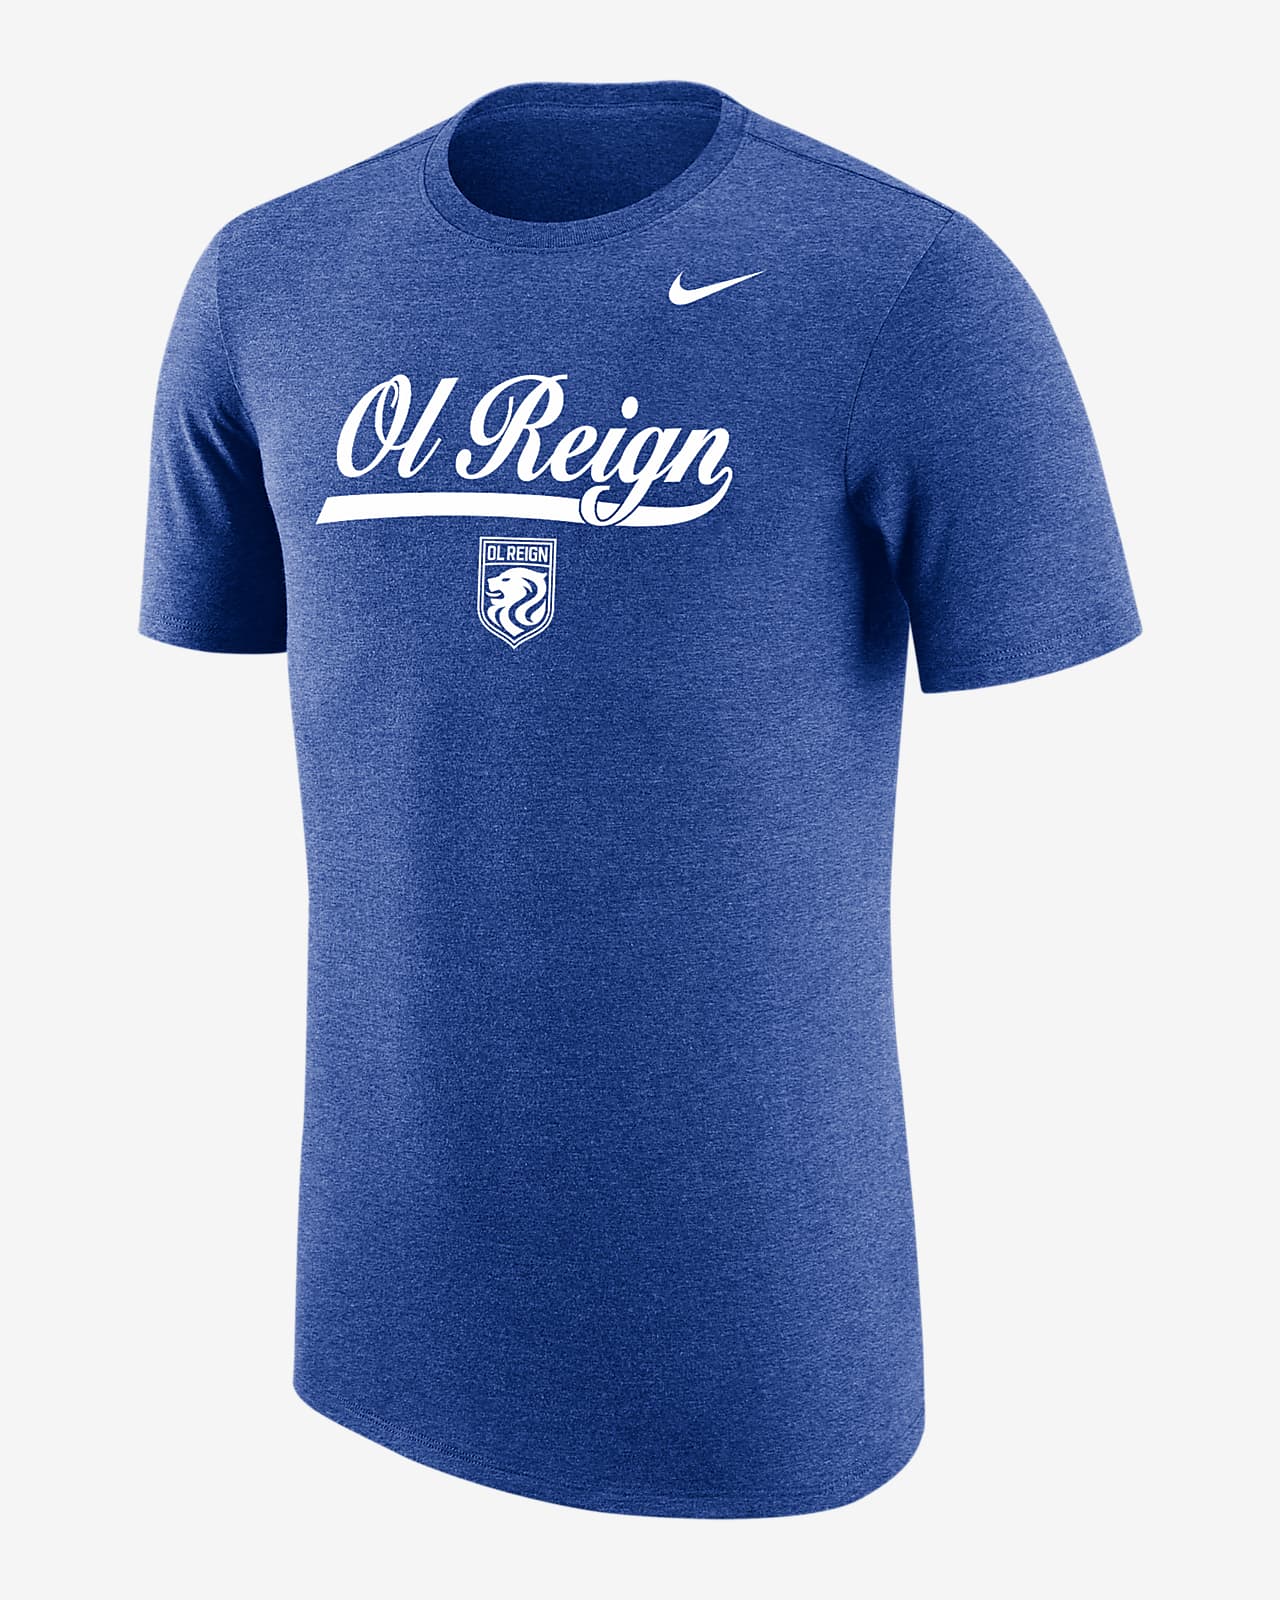 OL Reign Men's Nike Soccer T-Shirt